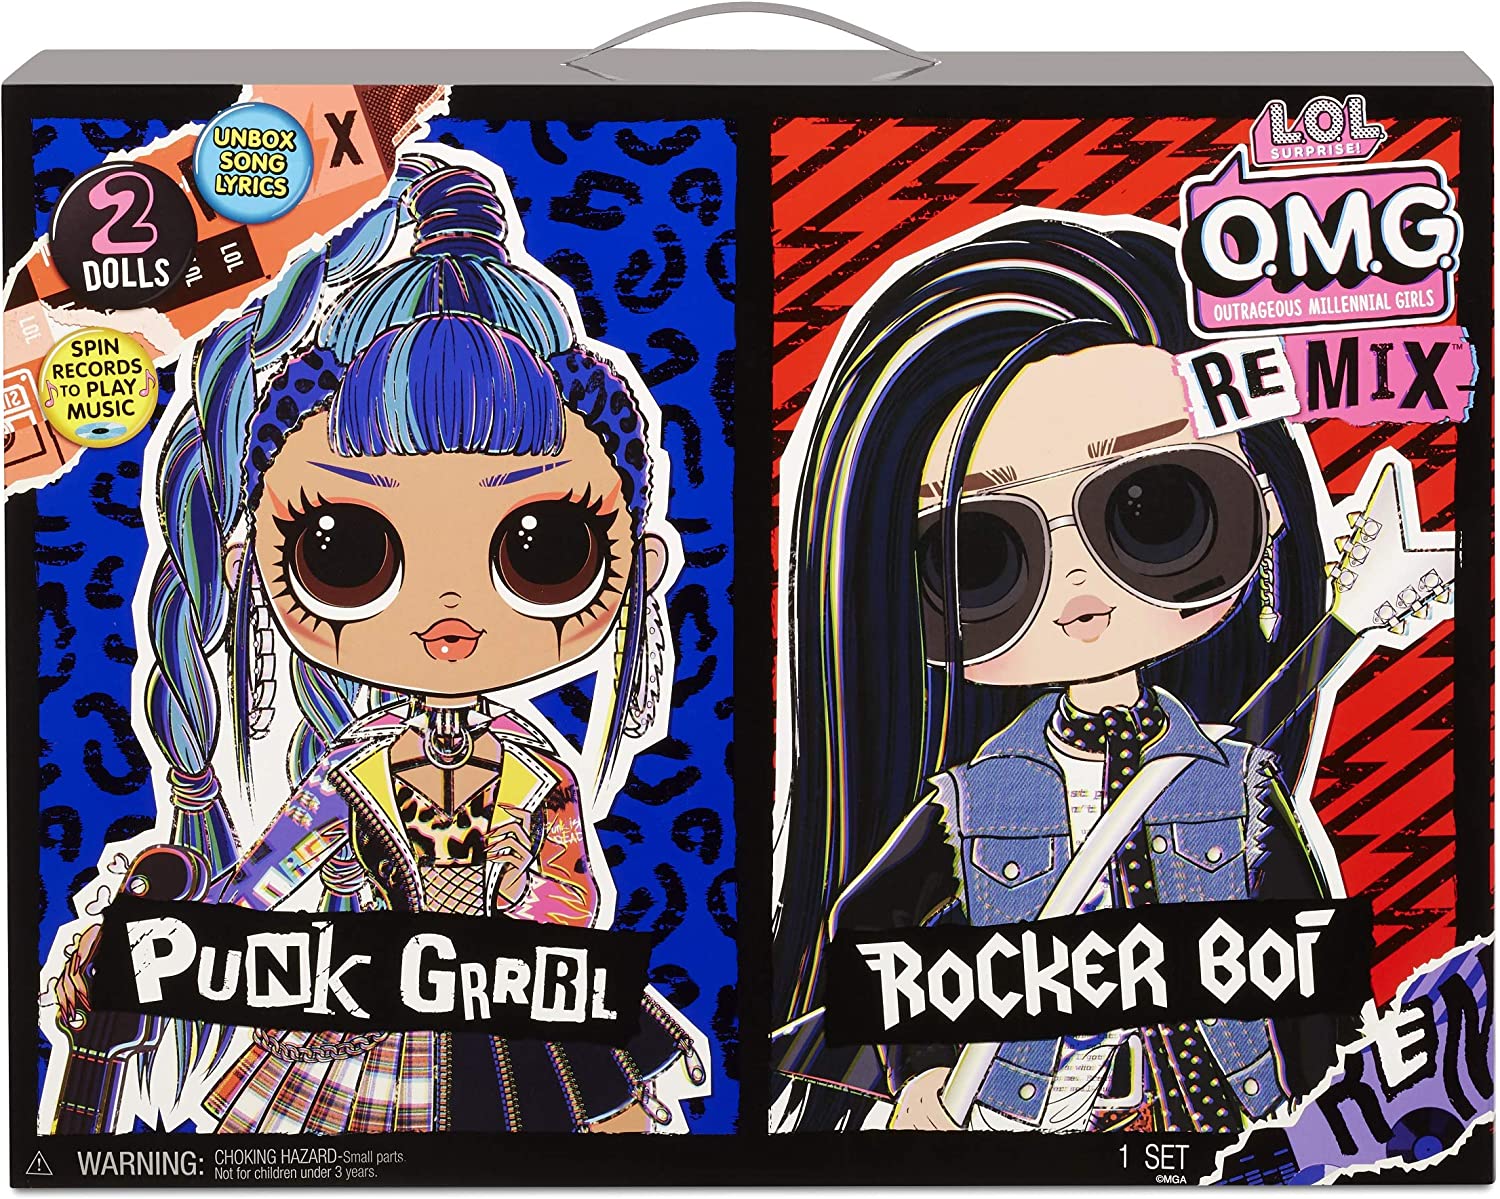 LOL Surprise O.M.G Remix Rocker Boi and Punk Pack de 2 muñecas